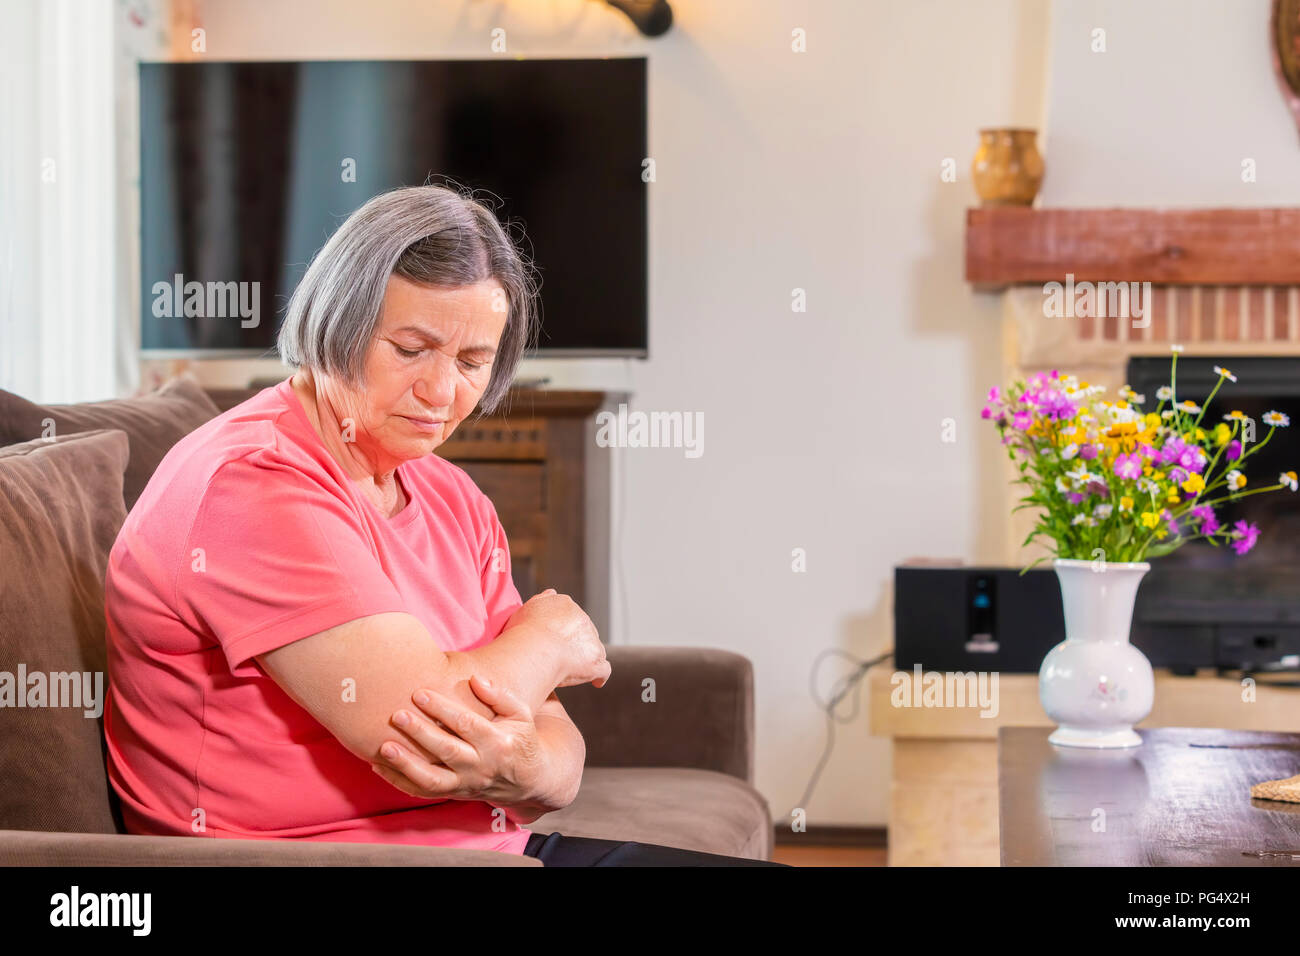 Hauts femme souffrant de douleurs dans la main à la maison. Problème de santé, de la vieillesse et les personnes concept Banque D'Images